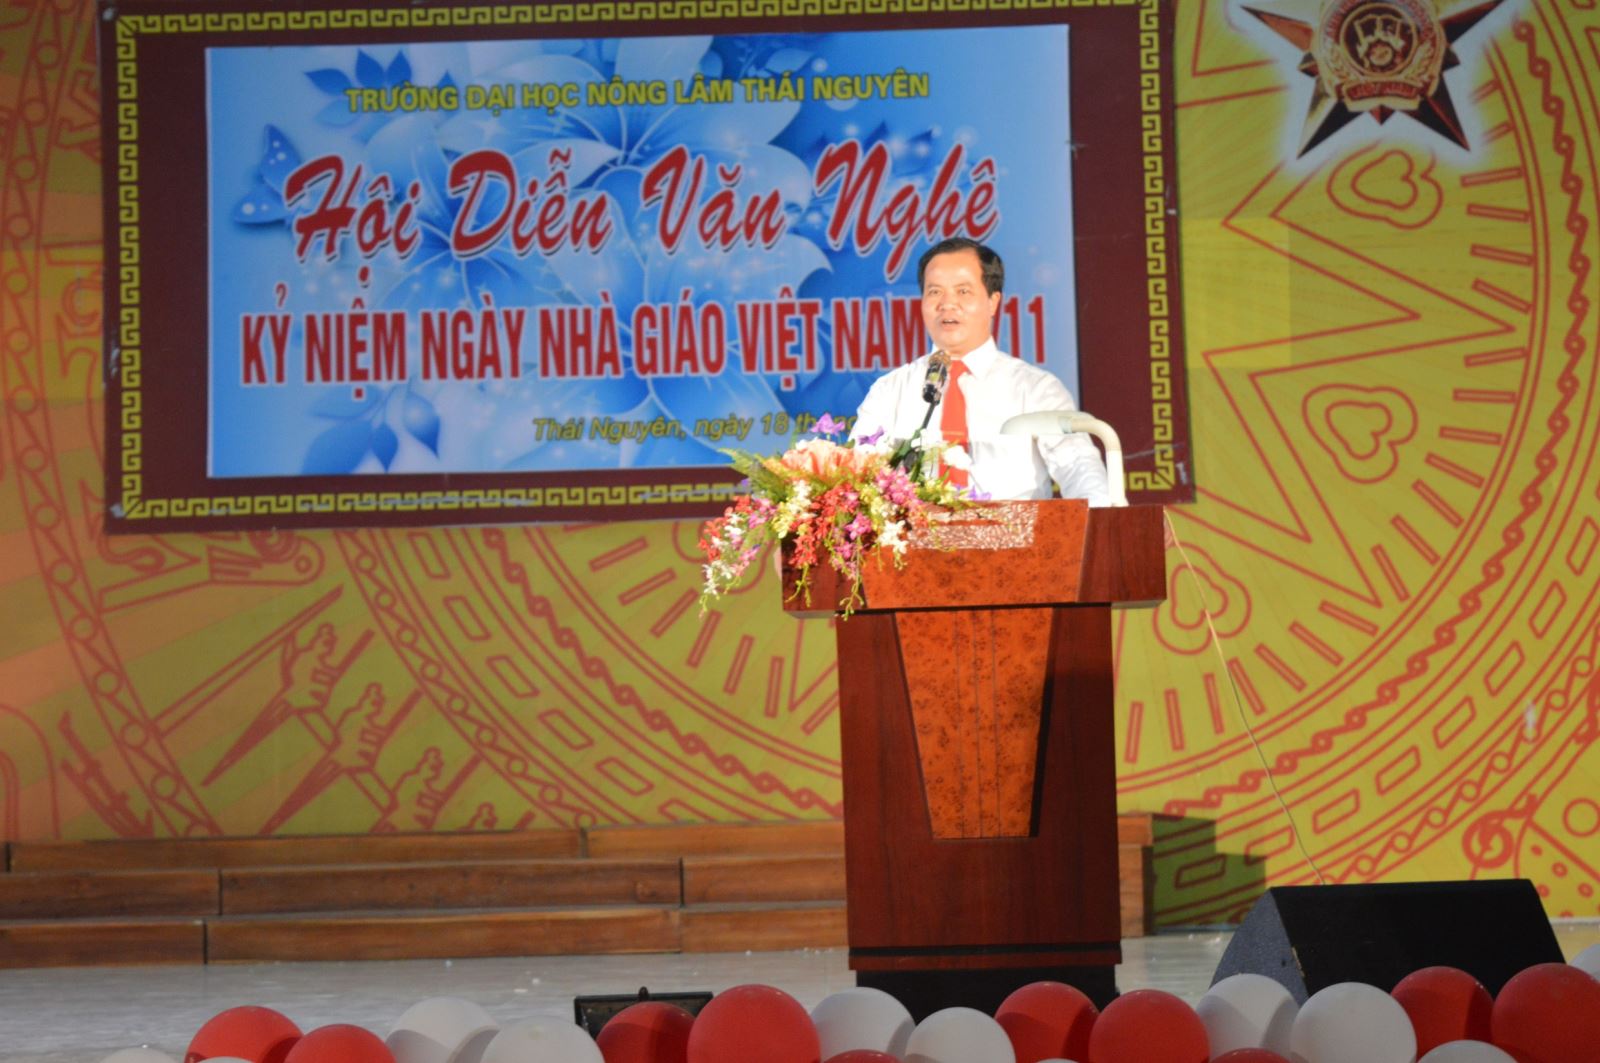 PGS. TS. Trần Văn Điền - Bí thư Đảng ủy, Hiệu trưởng trường ĐHNL khai mạc hội diễn